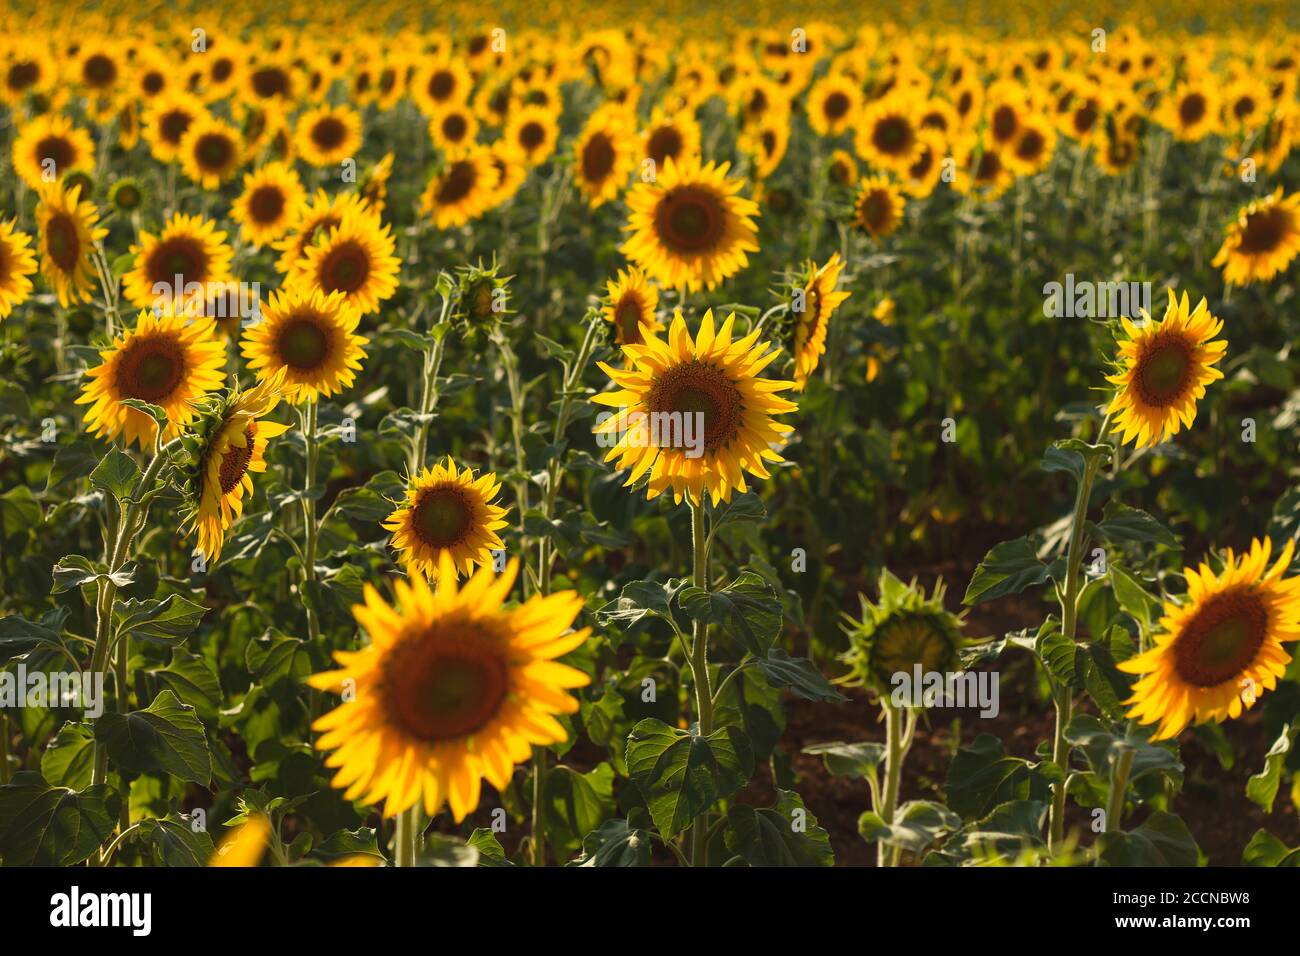 Sunflowers field landscape in bloom Stock Photo